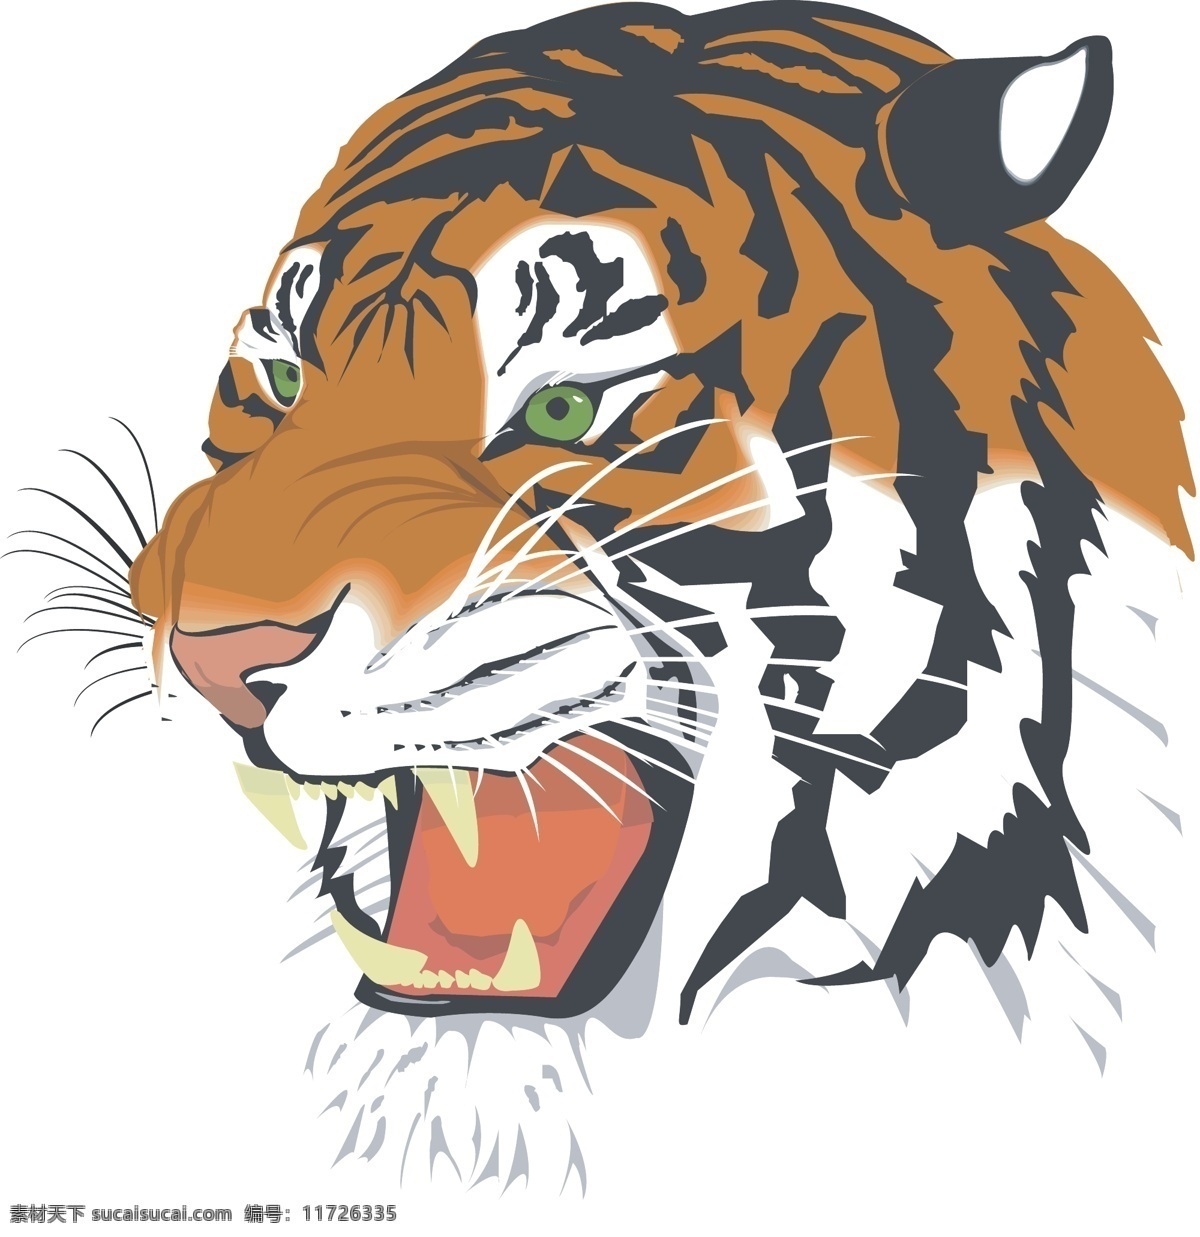 老虎 tiger 骷髅头 皇冠 t裇设计 图案设计 范思哲 纪梵希 条纹 几何体 烫钻 动漫动画